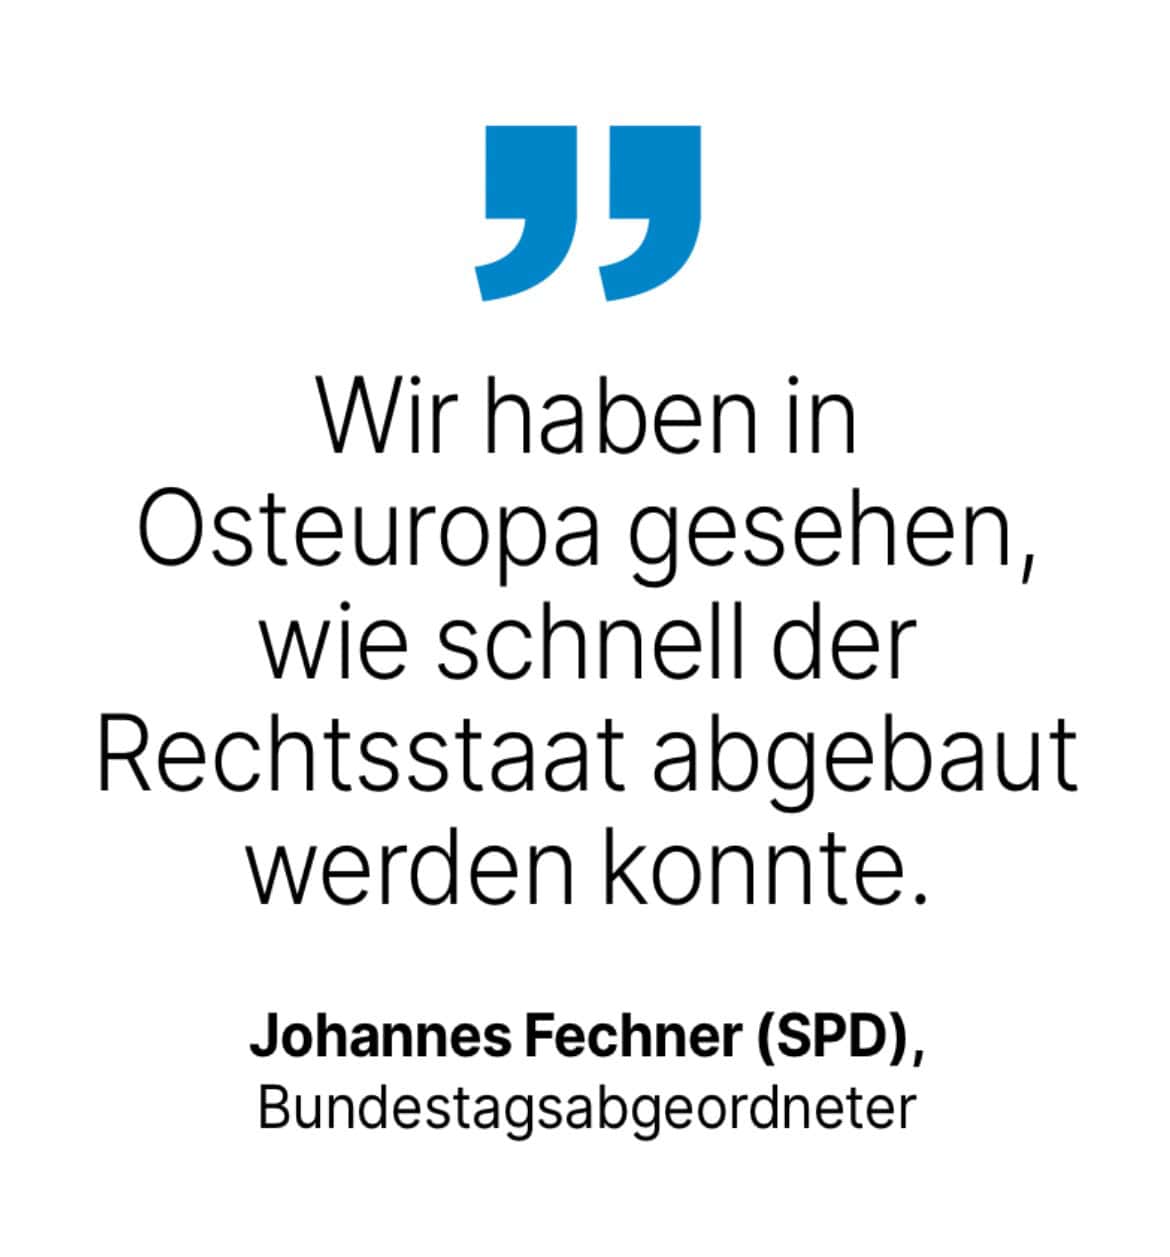 Johannes Fechner (SPD), Bundestagsabgeordneter: Wir haben in Osteuropa gesehen, wie schnell der Rechtsstaat abgebaut werden konnte.